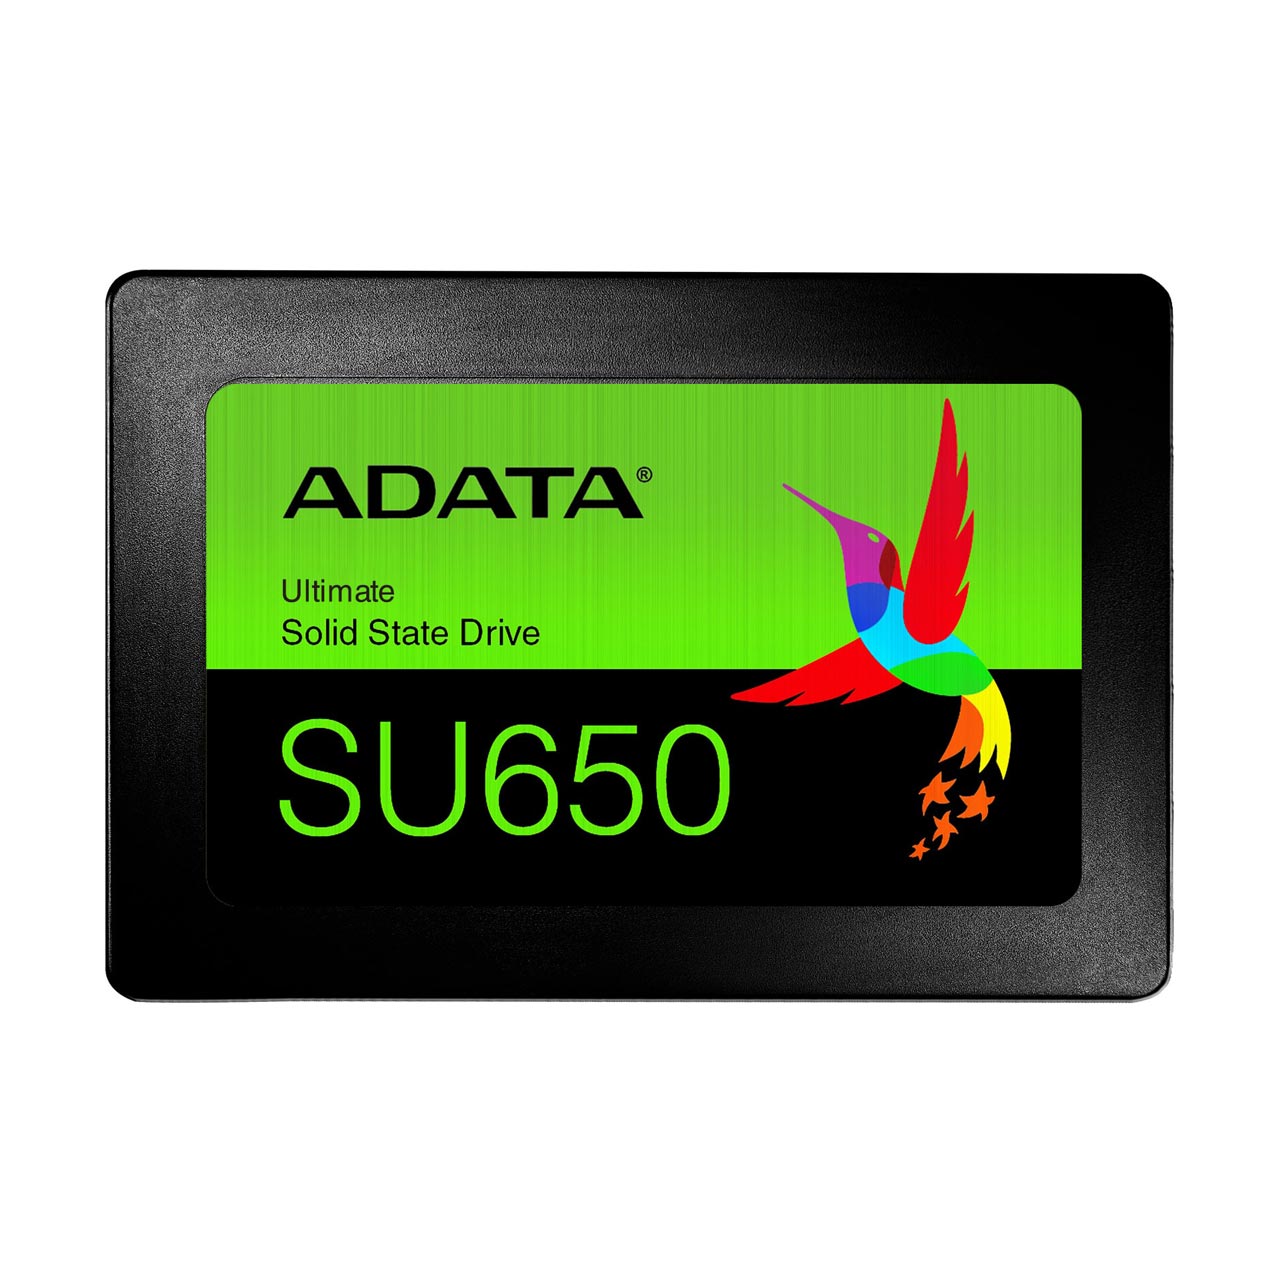 حافظه SSD برند ADATA مدل SU650 ظرفیت 240GB 

ADATA SU650 240GB Ultimate SSD